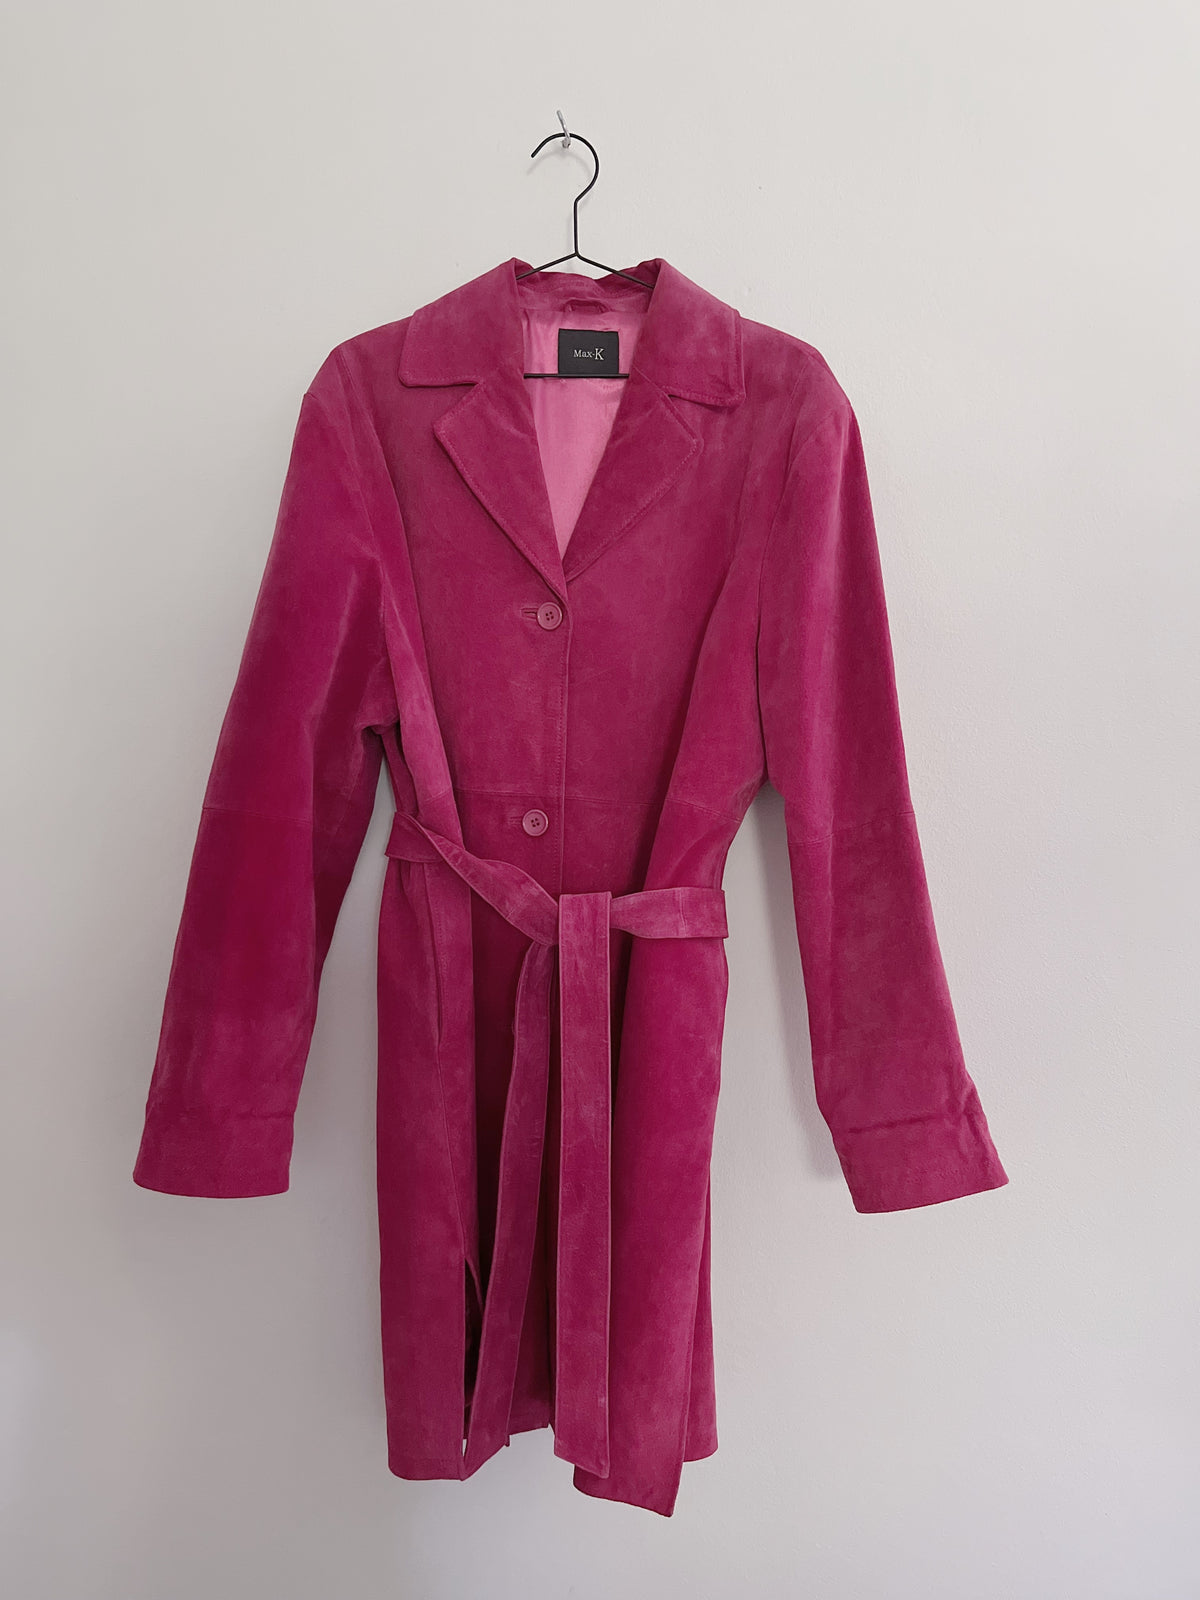 Pink suede frakke